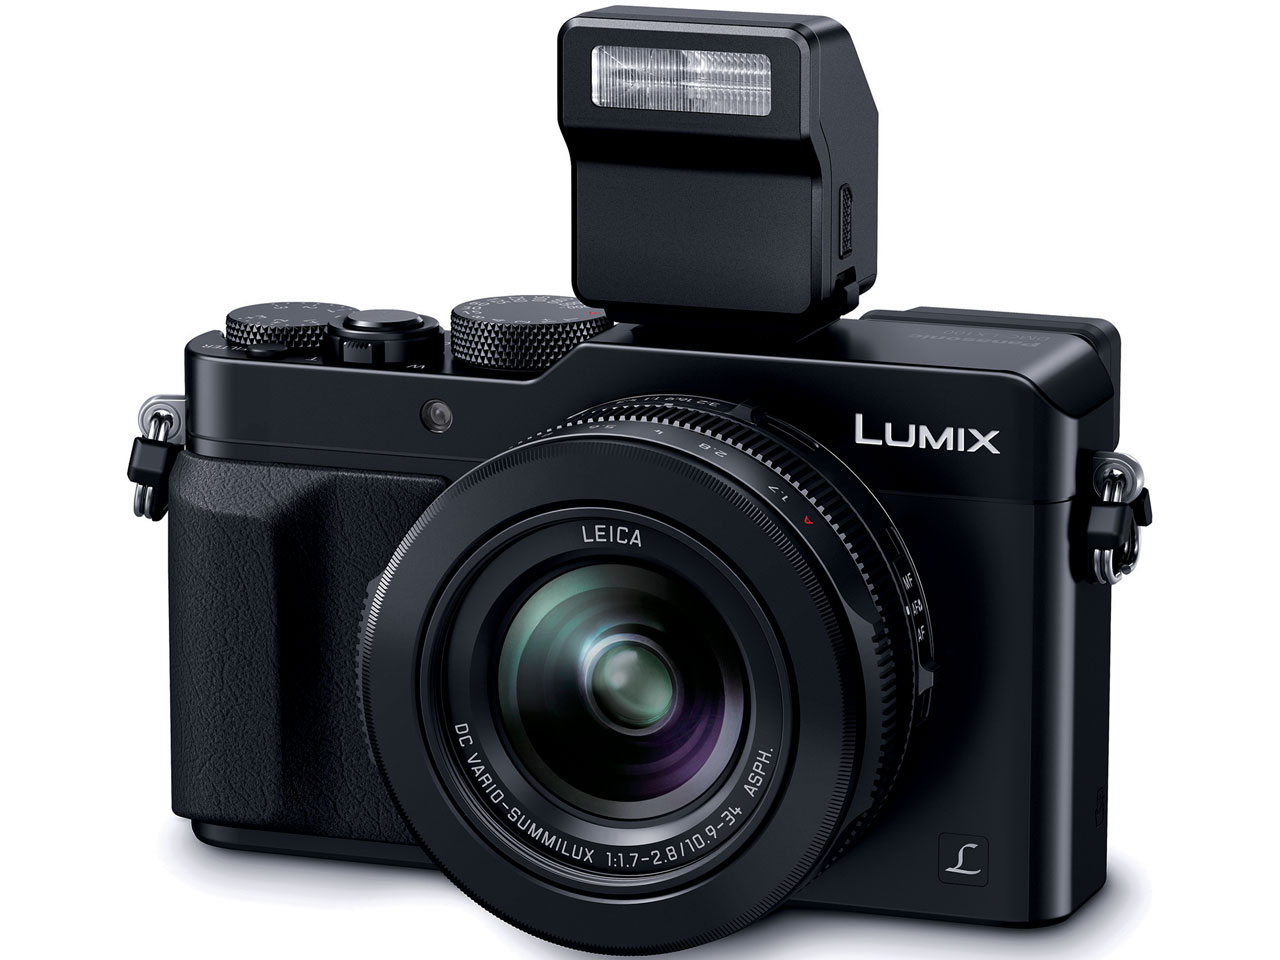 『本体 正面3』 LUMIX DMC-LX100-K [ブラック] の製品画像